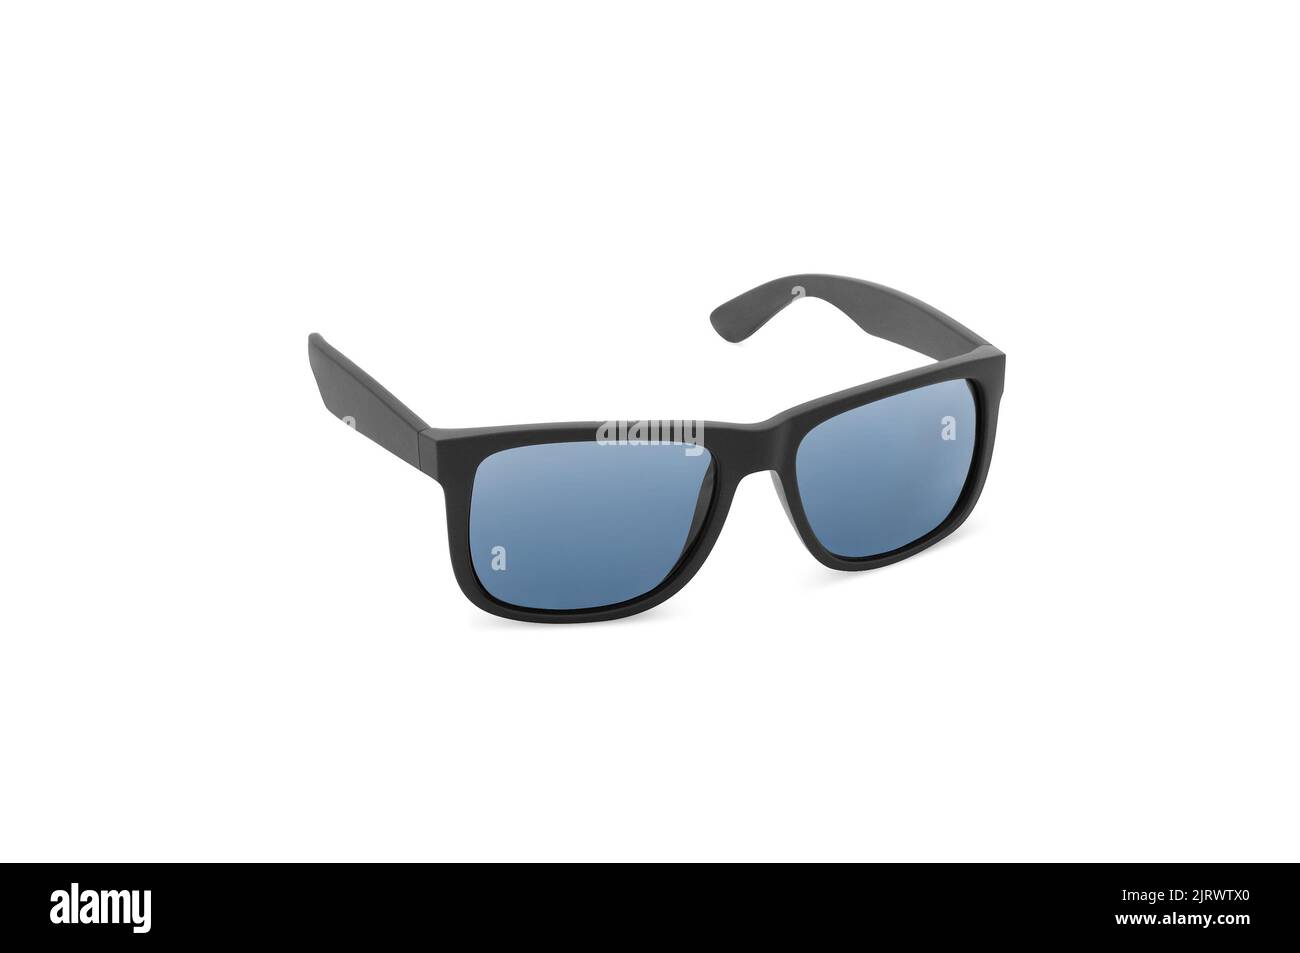 black frame blue lens polarized sunglasses on isolated white background Stock Photo